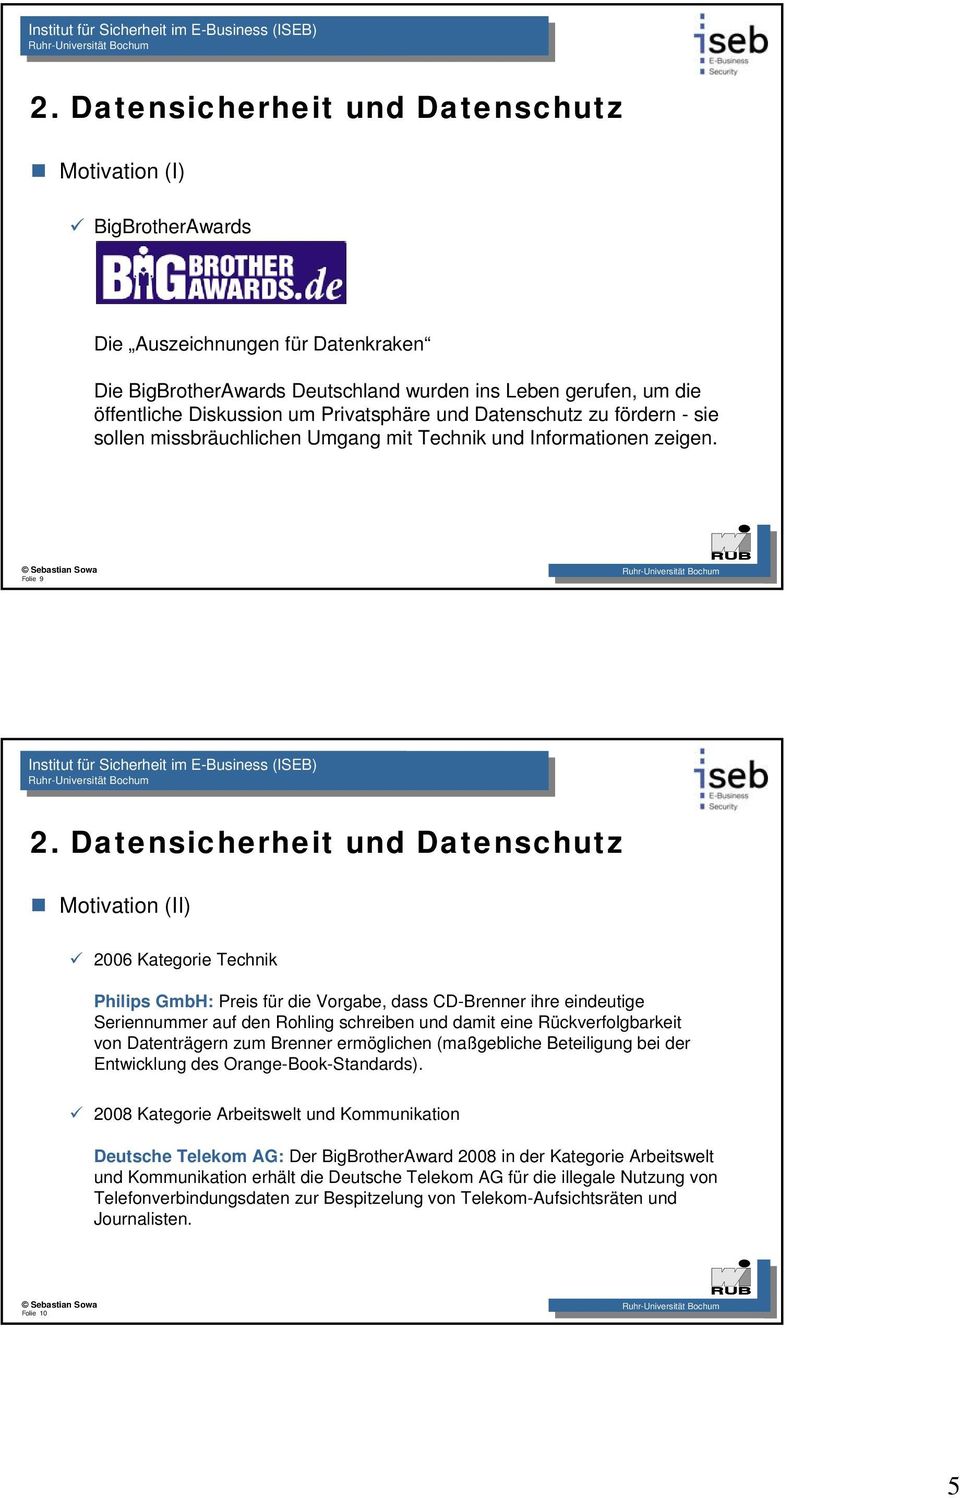 Folie 9 Motivation (II) 2006 Kategorie Technik Philips GmbH: Preis für die Vorgabe, dass CD-Brenner ihre eindeutige Seriennummer auf den Rohling schreiben und damit eine Rückverfolgbarkeit von